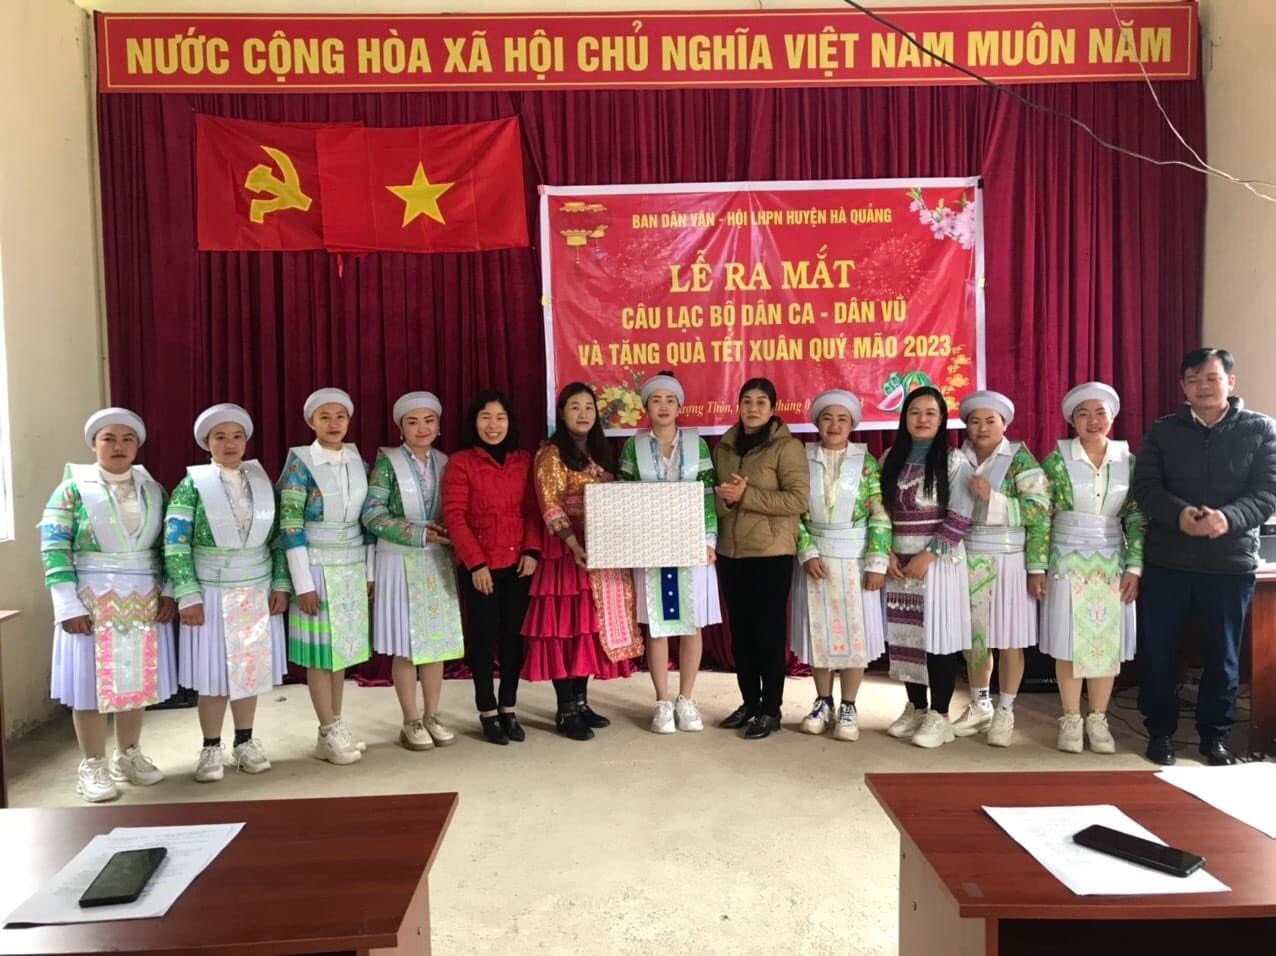 Hiệu quả từ Mô hình Câu lạc bộ Dân ca, dân vũ của các Chi hội trên địa bàn huyện Hà Quảng